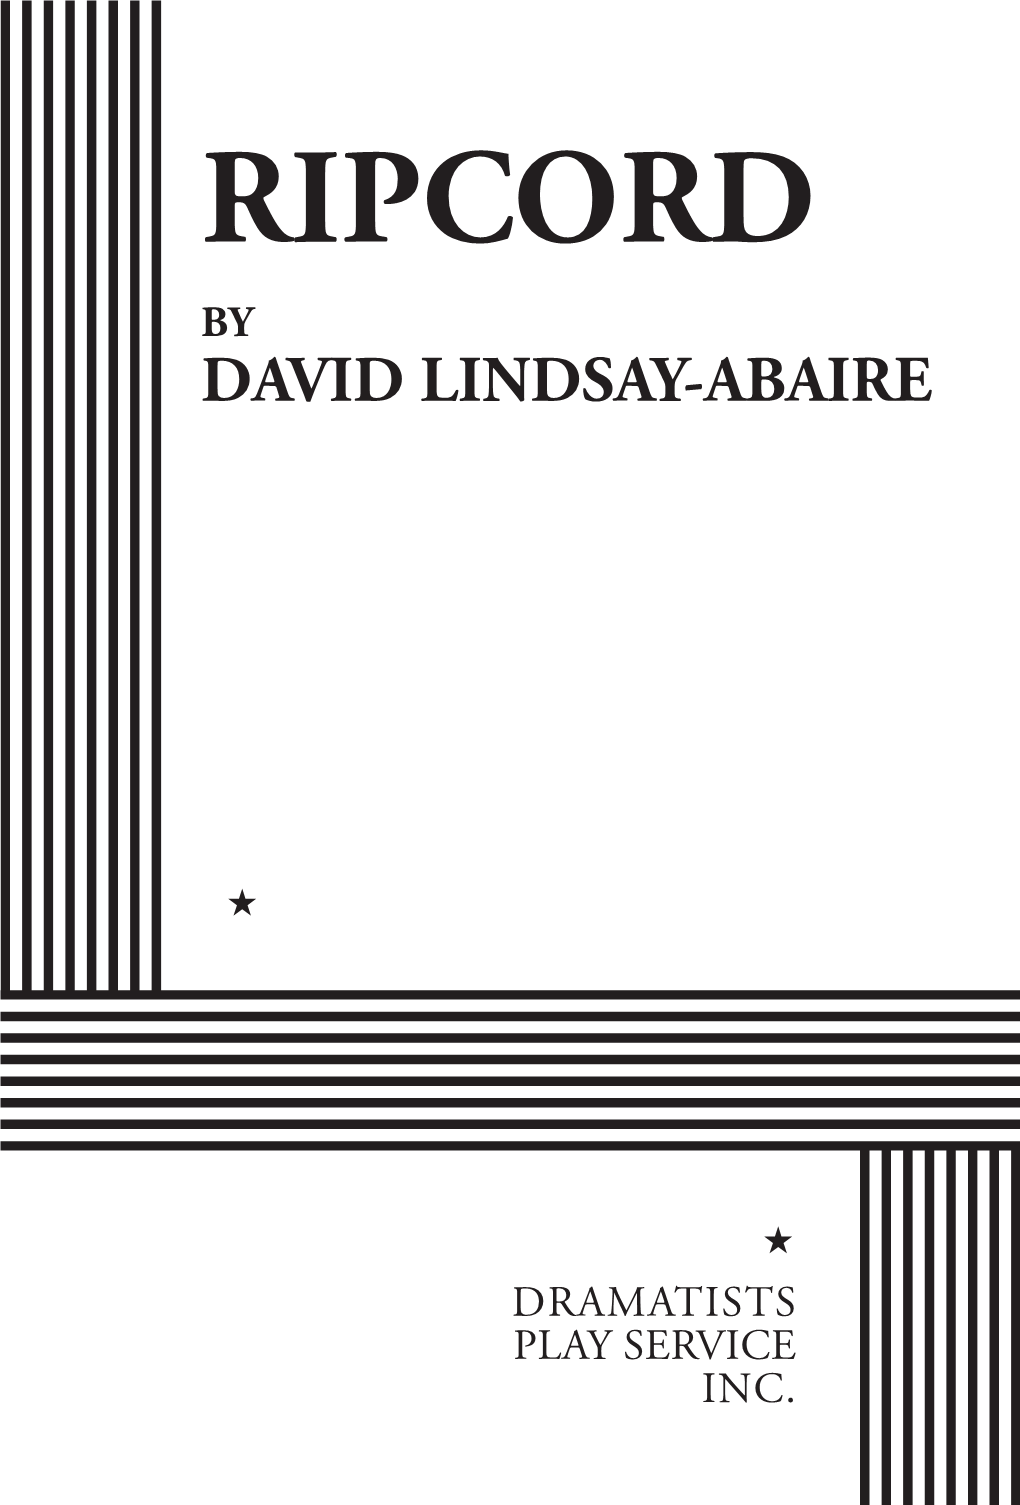 Ripcord by David Lindsay-Abaire